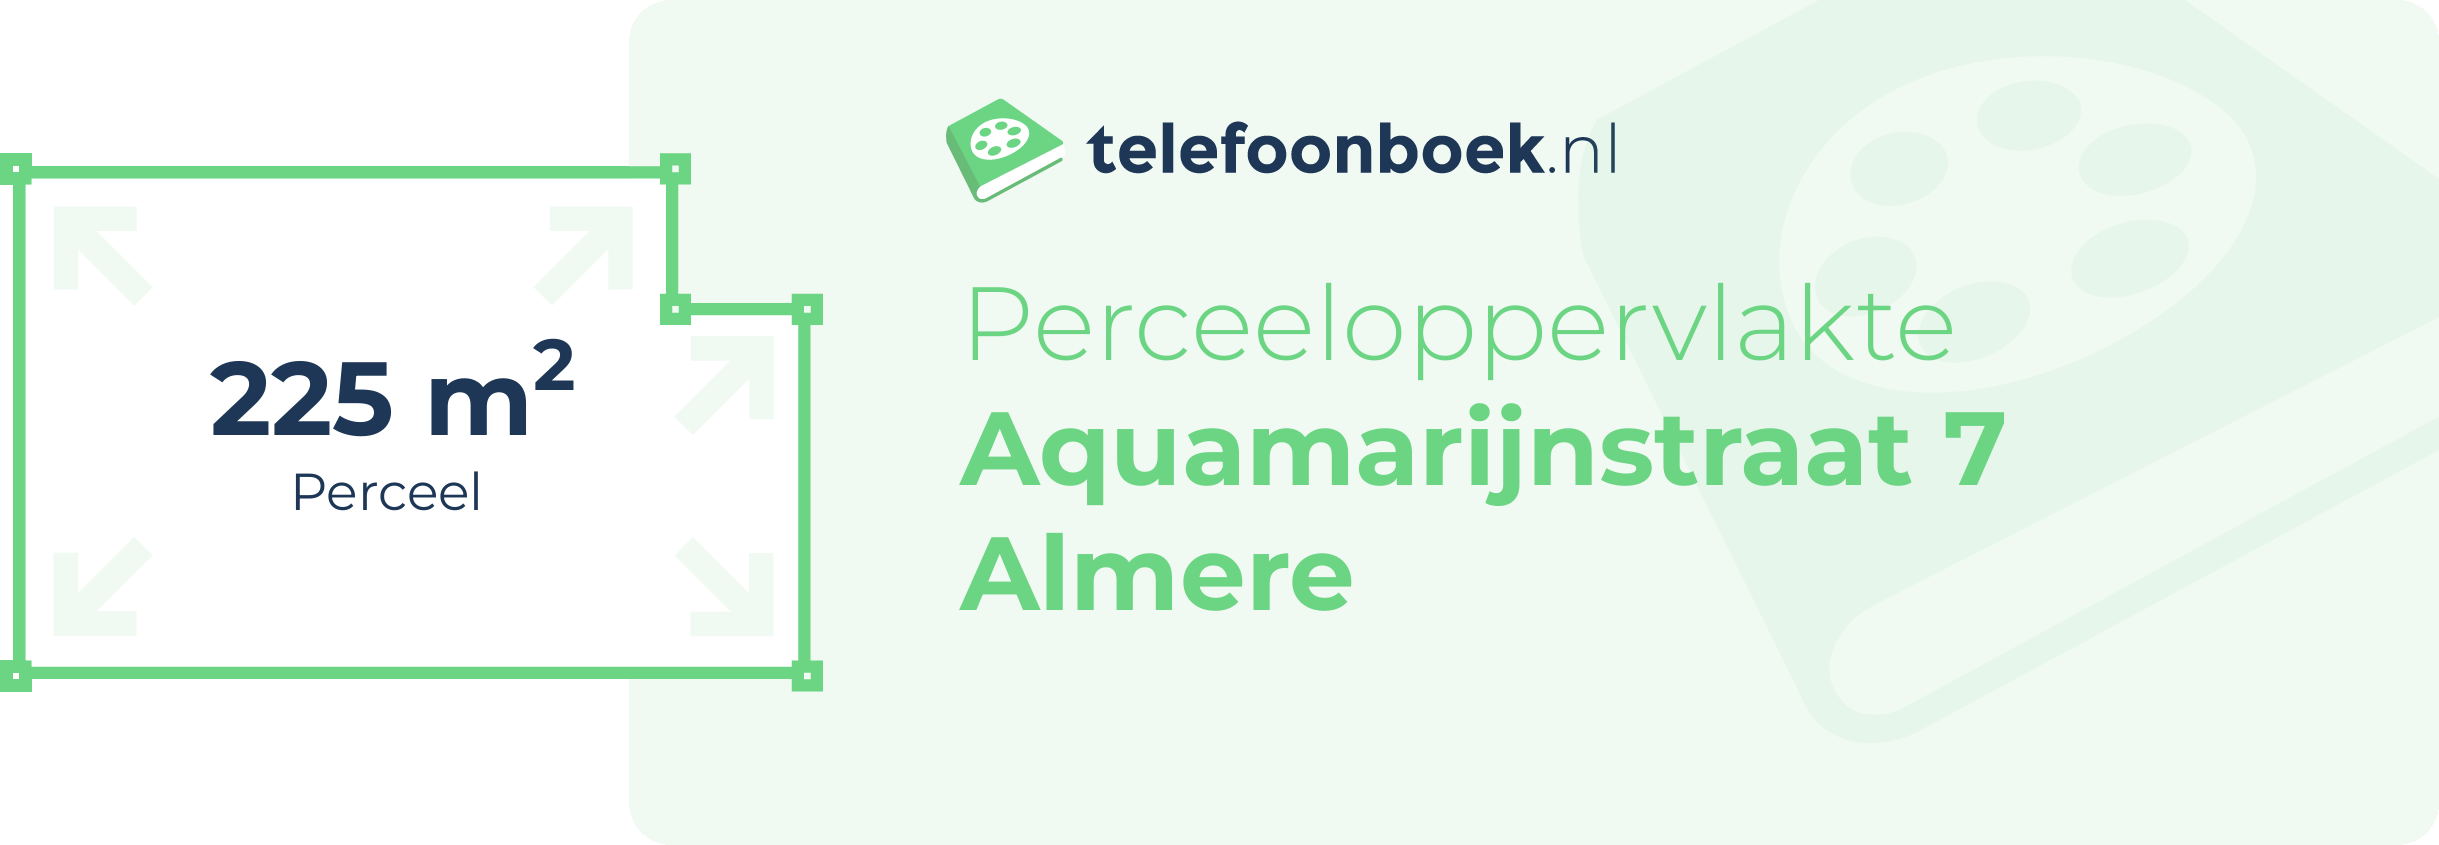 Perceeloppervlakte Aquamarijnstraat 7 Almere